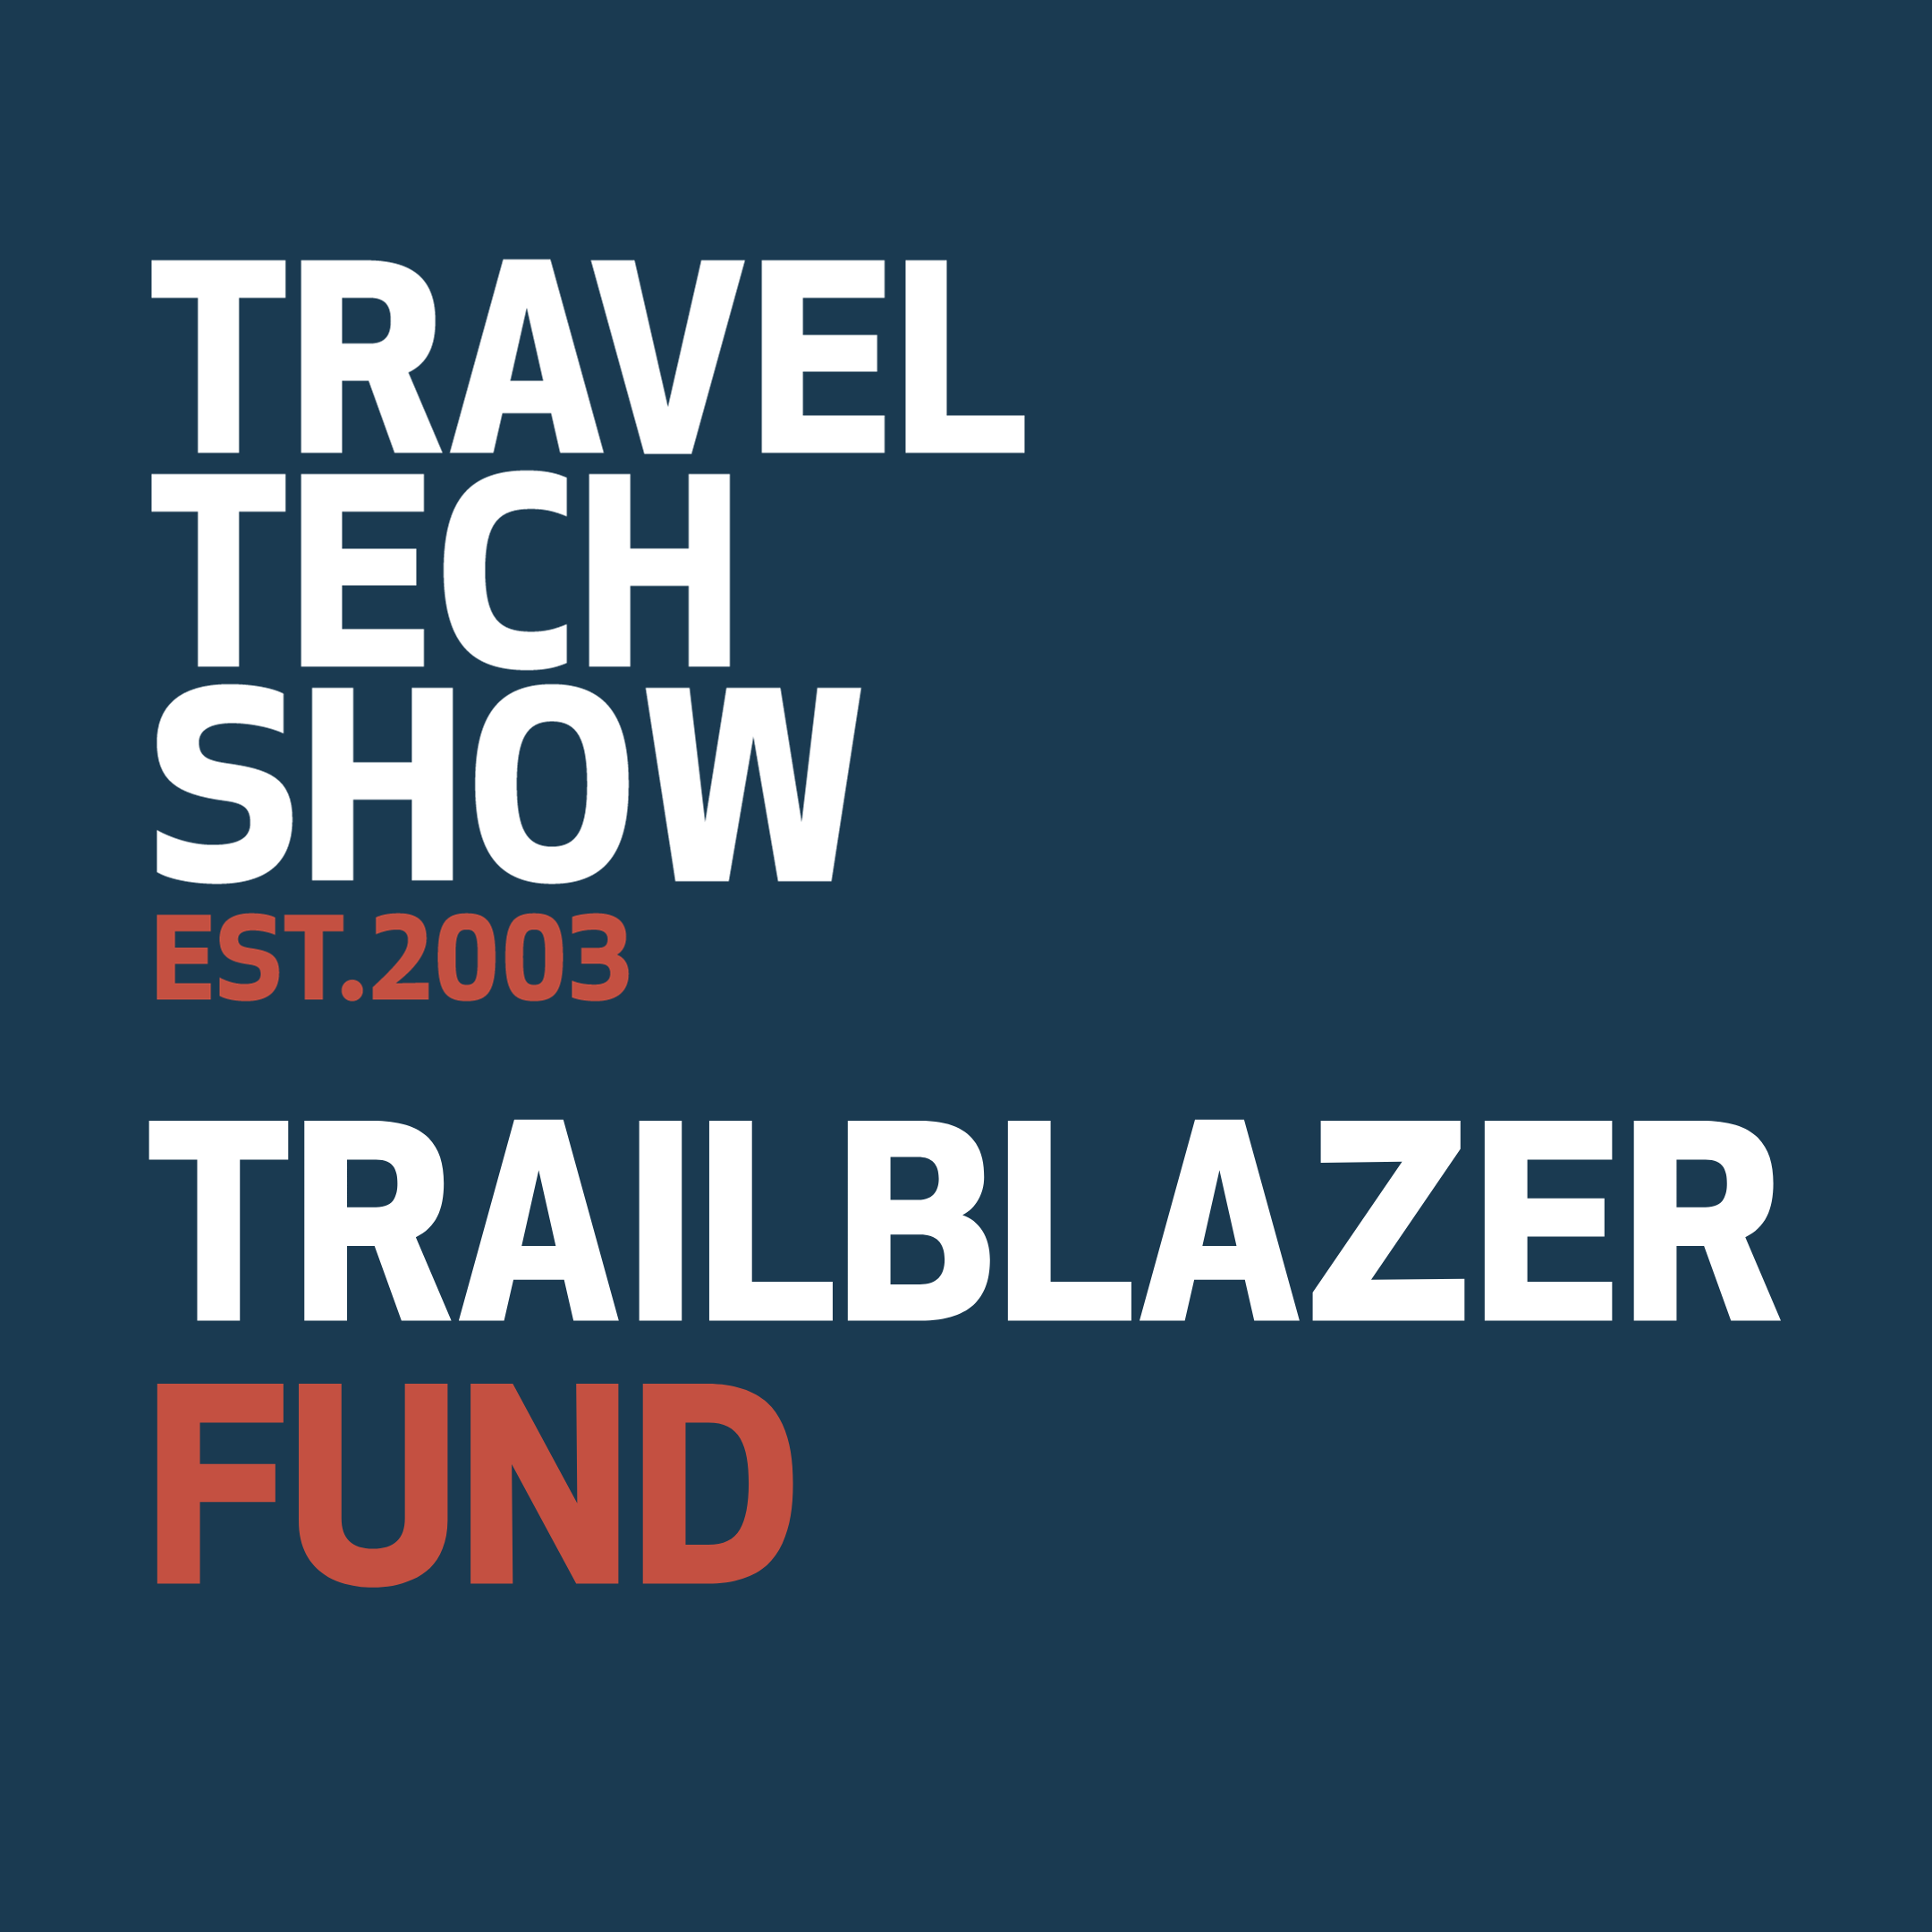 Trailblazer fund logo